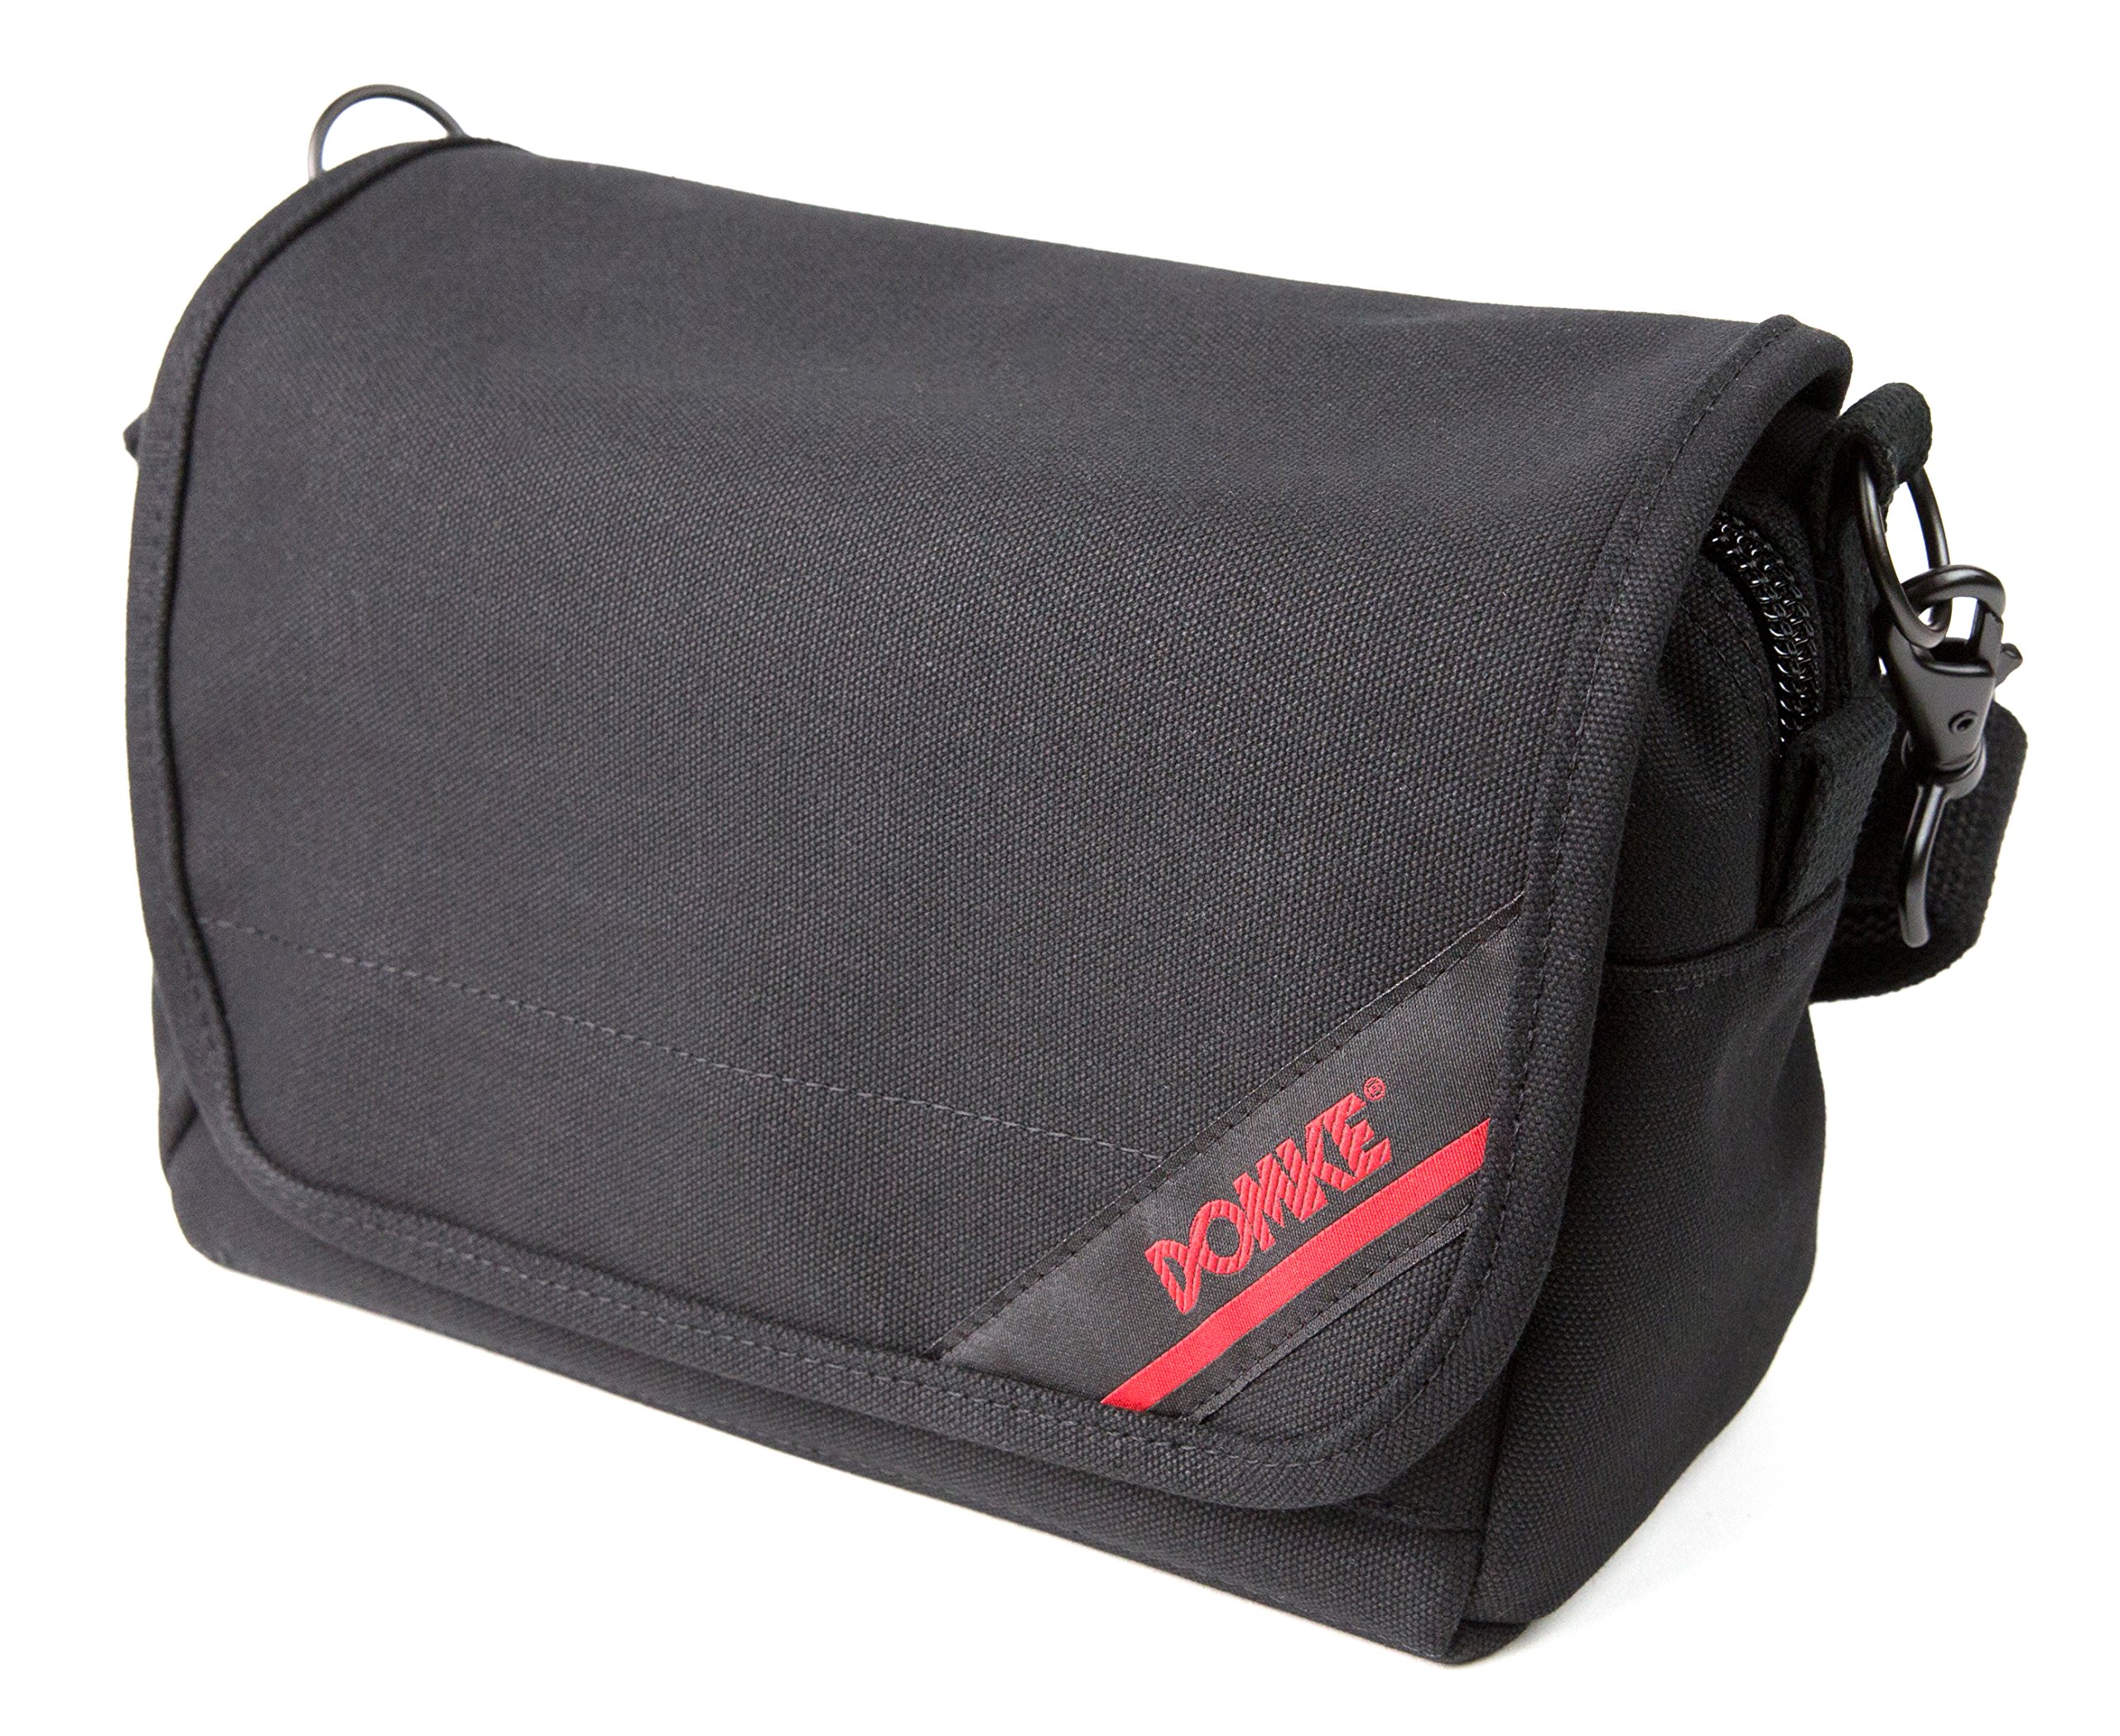 DOMKE Classic Camera Bags F-5XB Shoulder Belt Bag Kamera Tasche schwarz